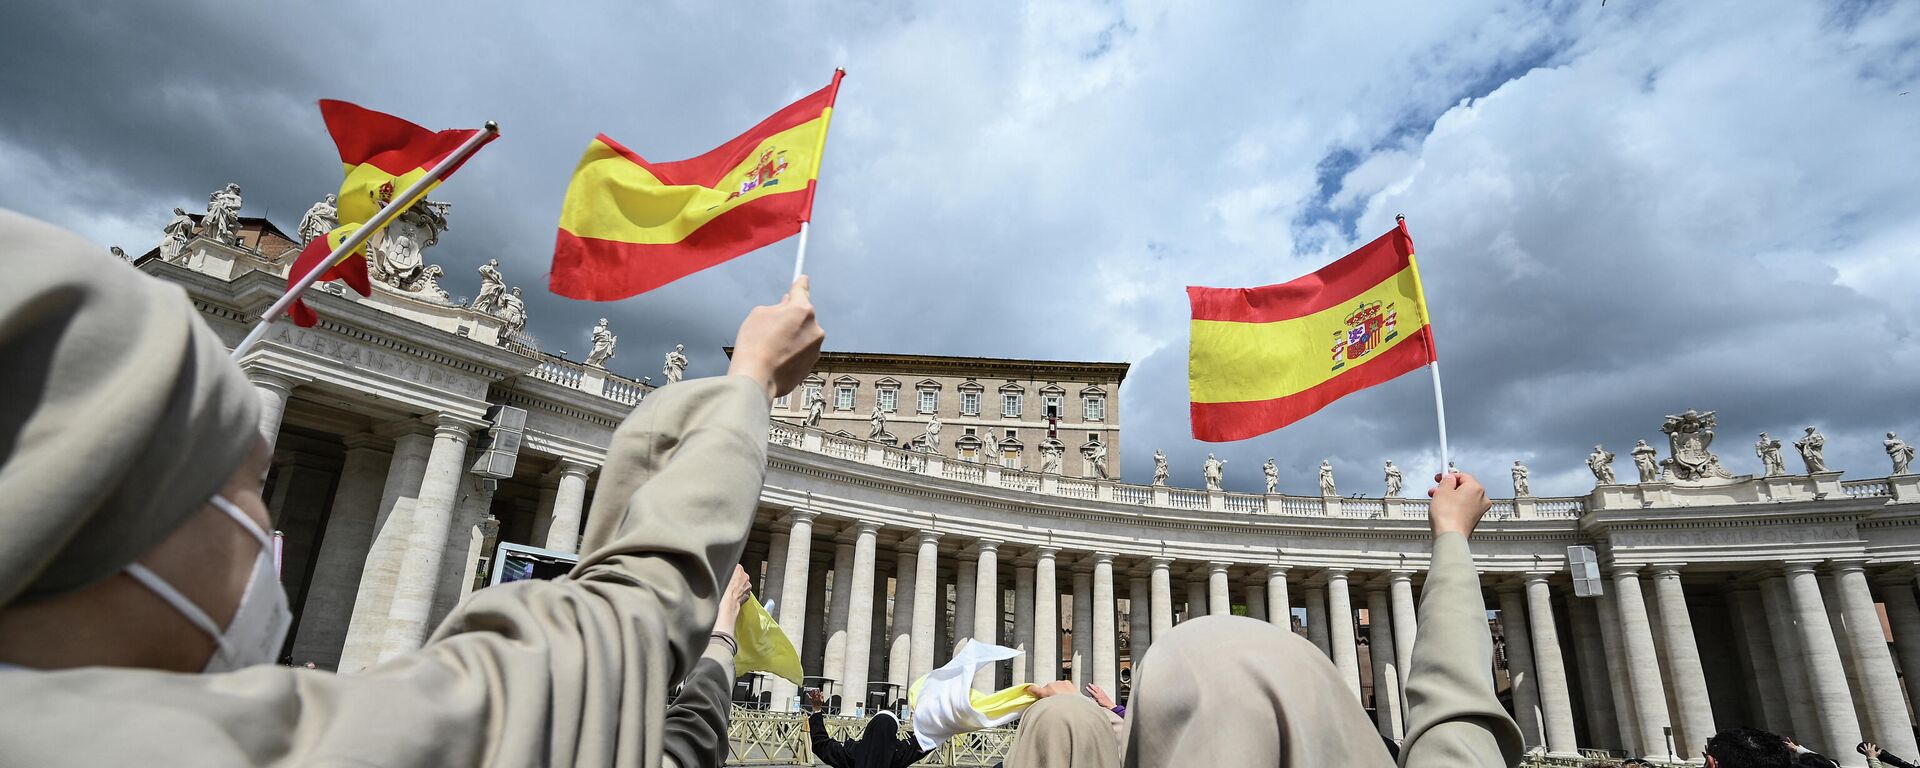 Monjas sostienen banderas españolas frente al Vaticano - Sputnik Mundo, 1920, 23.04.2021